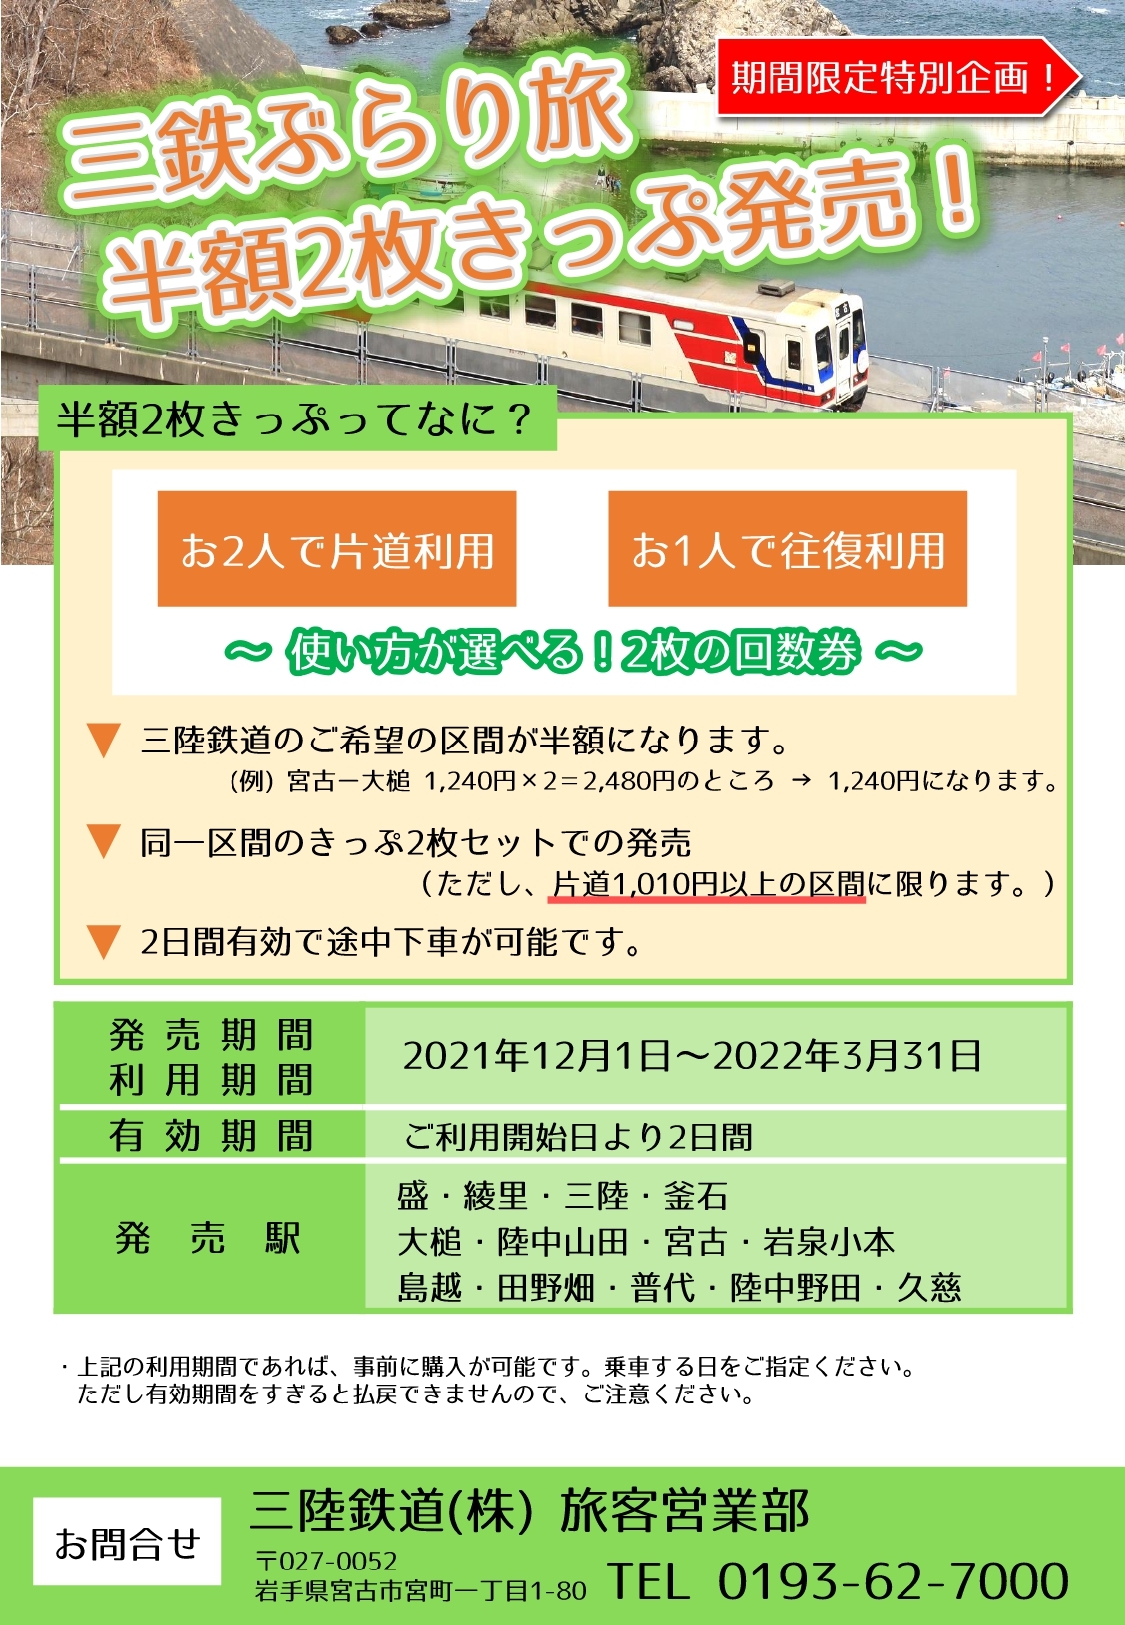 三陸鉄道のお得な切符: 山田とことこ日記